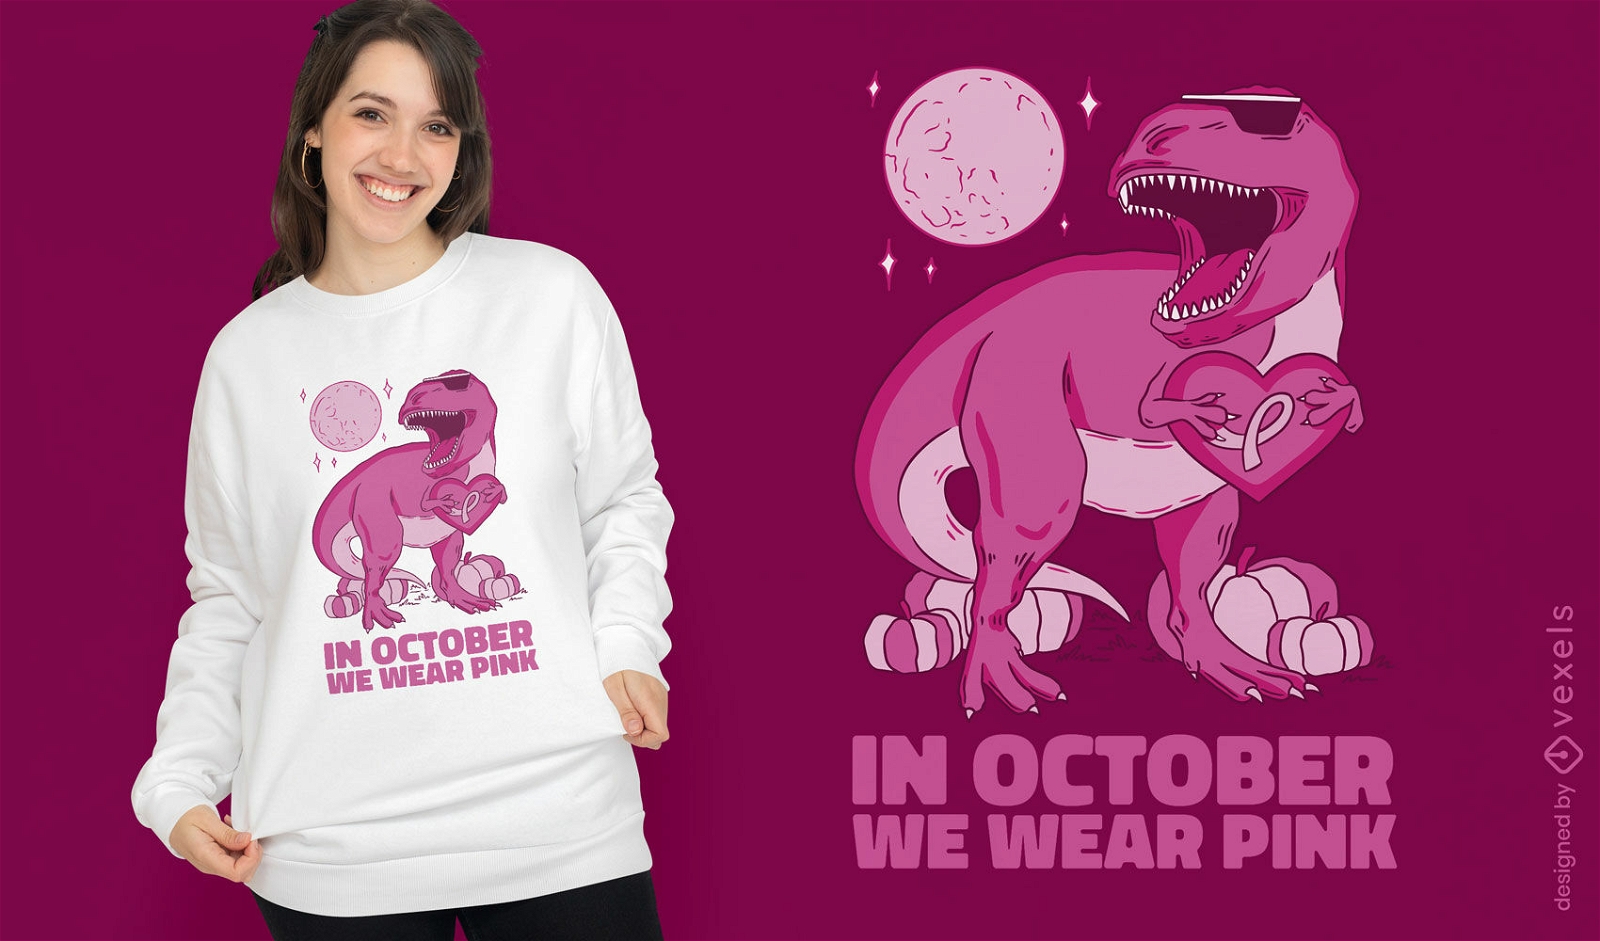 T-rex cancer awareness t-shirt design